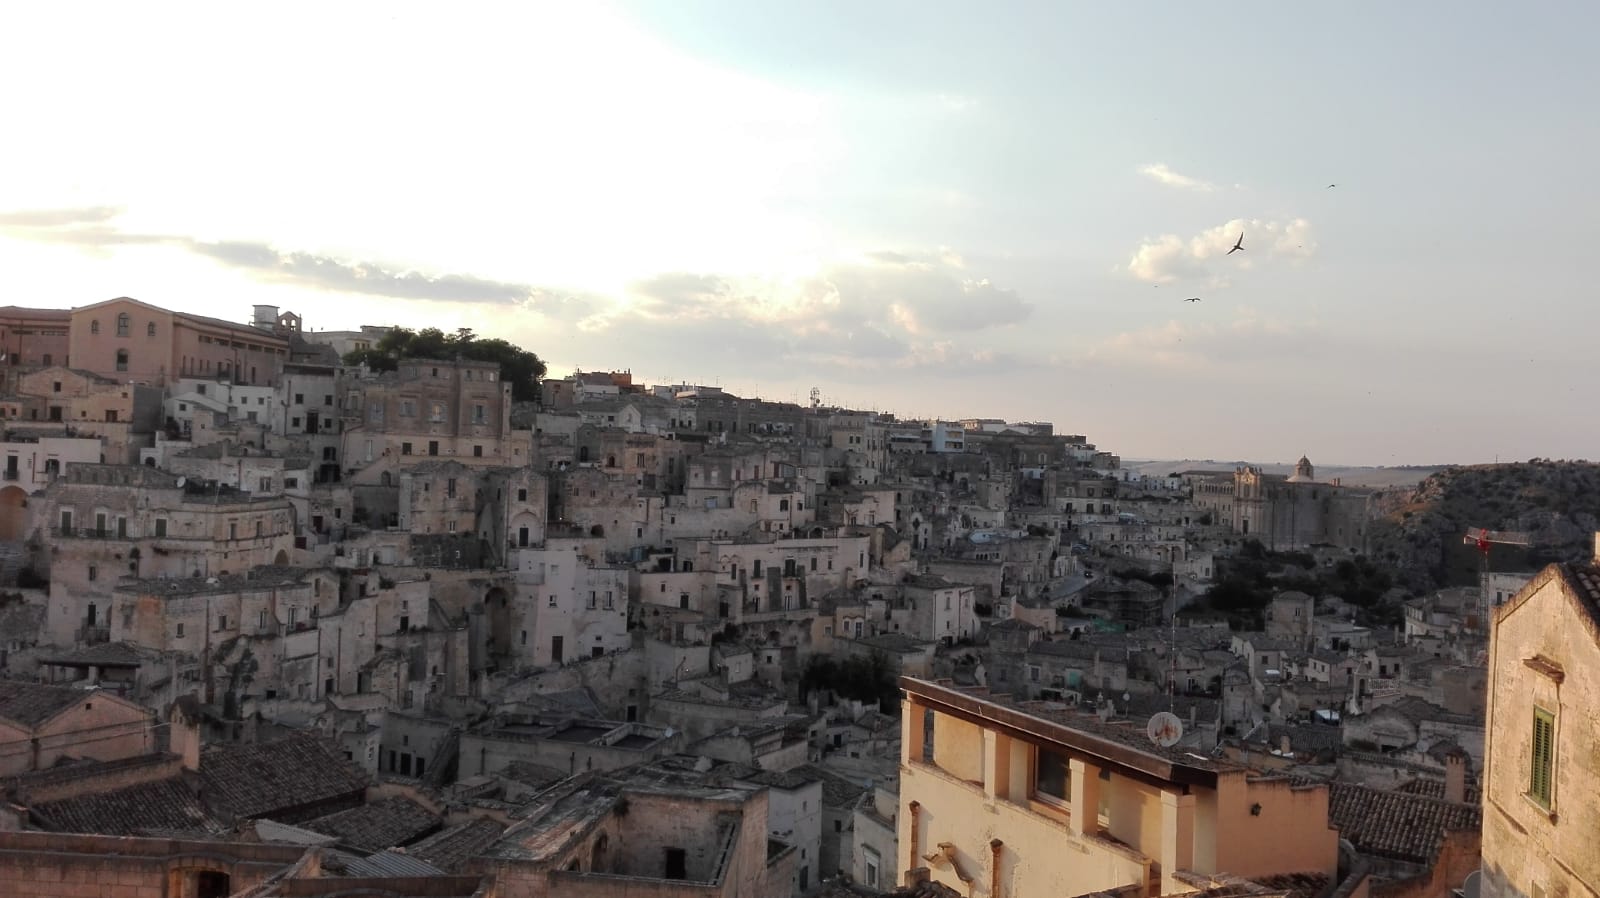 Il sindaco Bennardi: “Un programma vaccinale per la ripresa turistica di Matera”